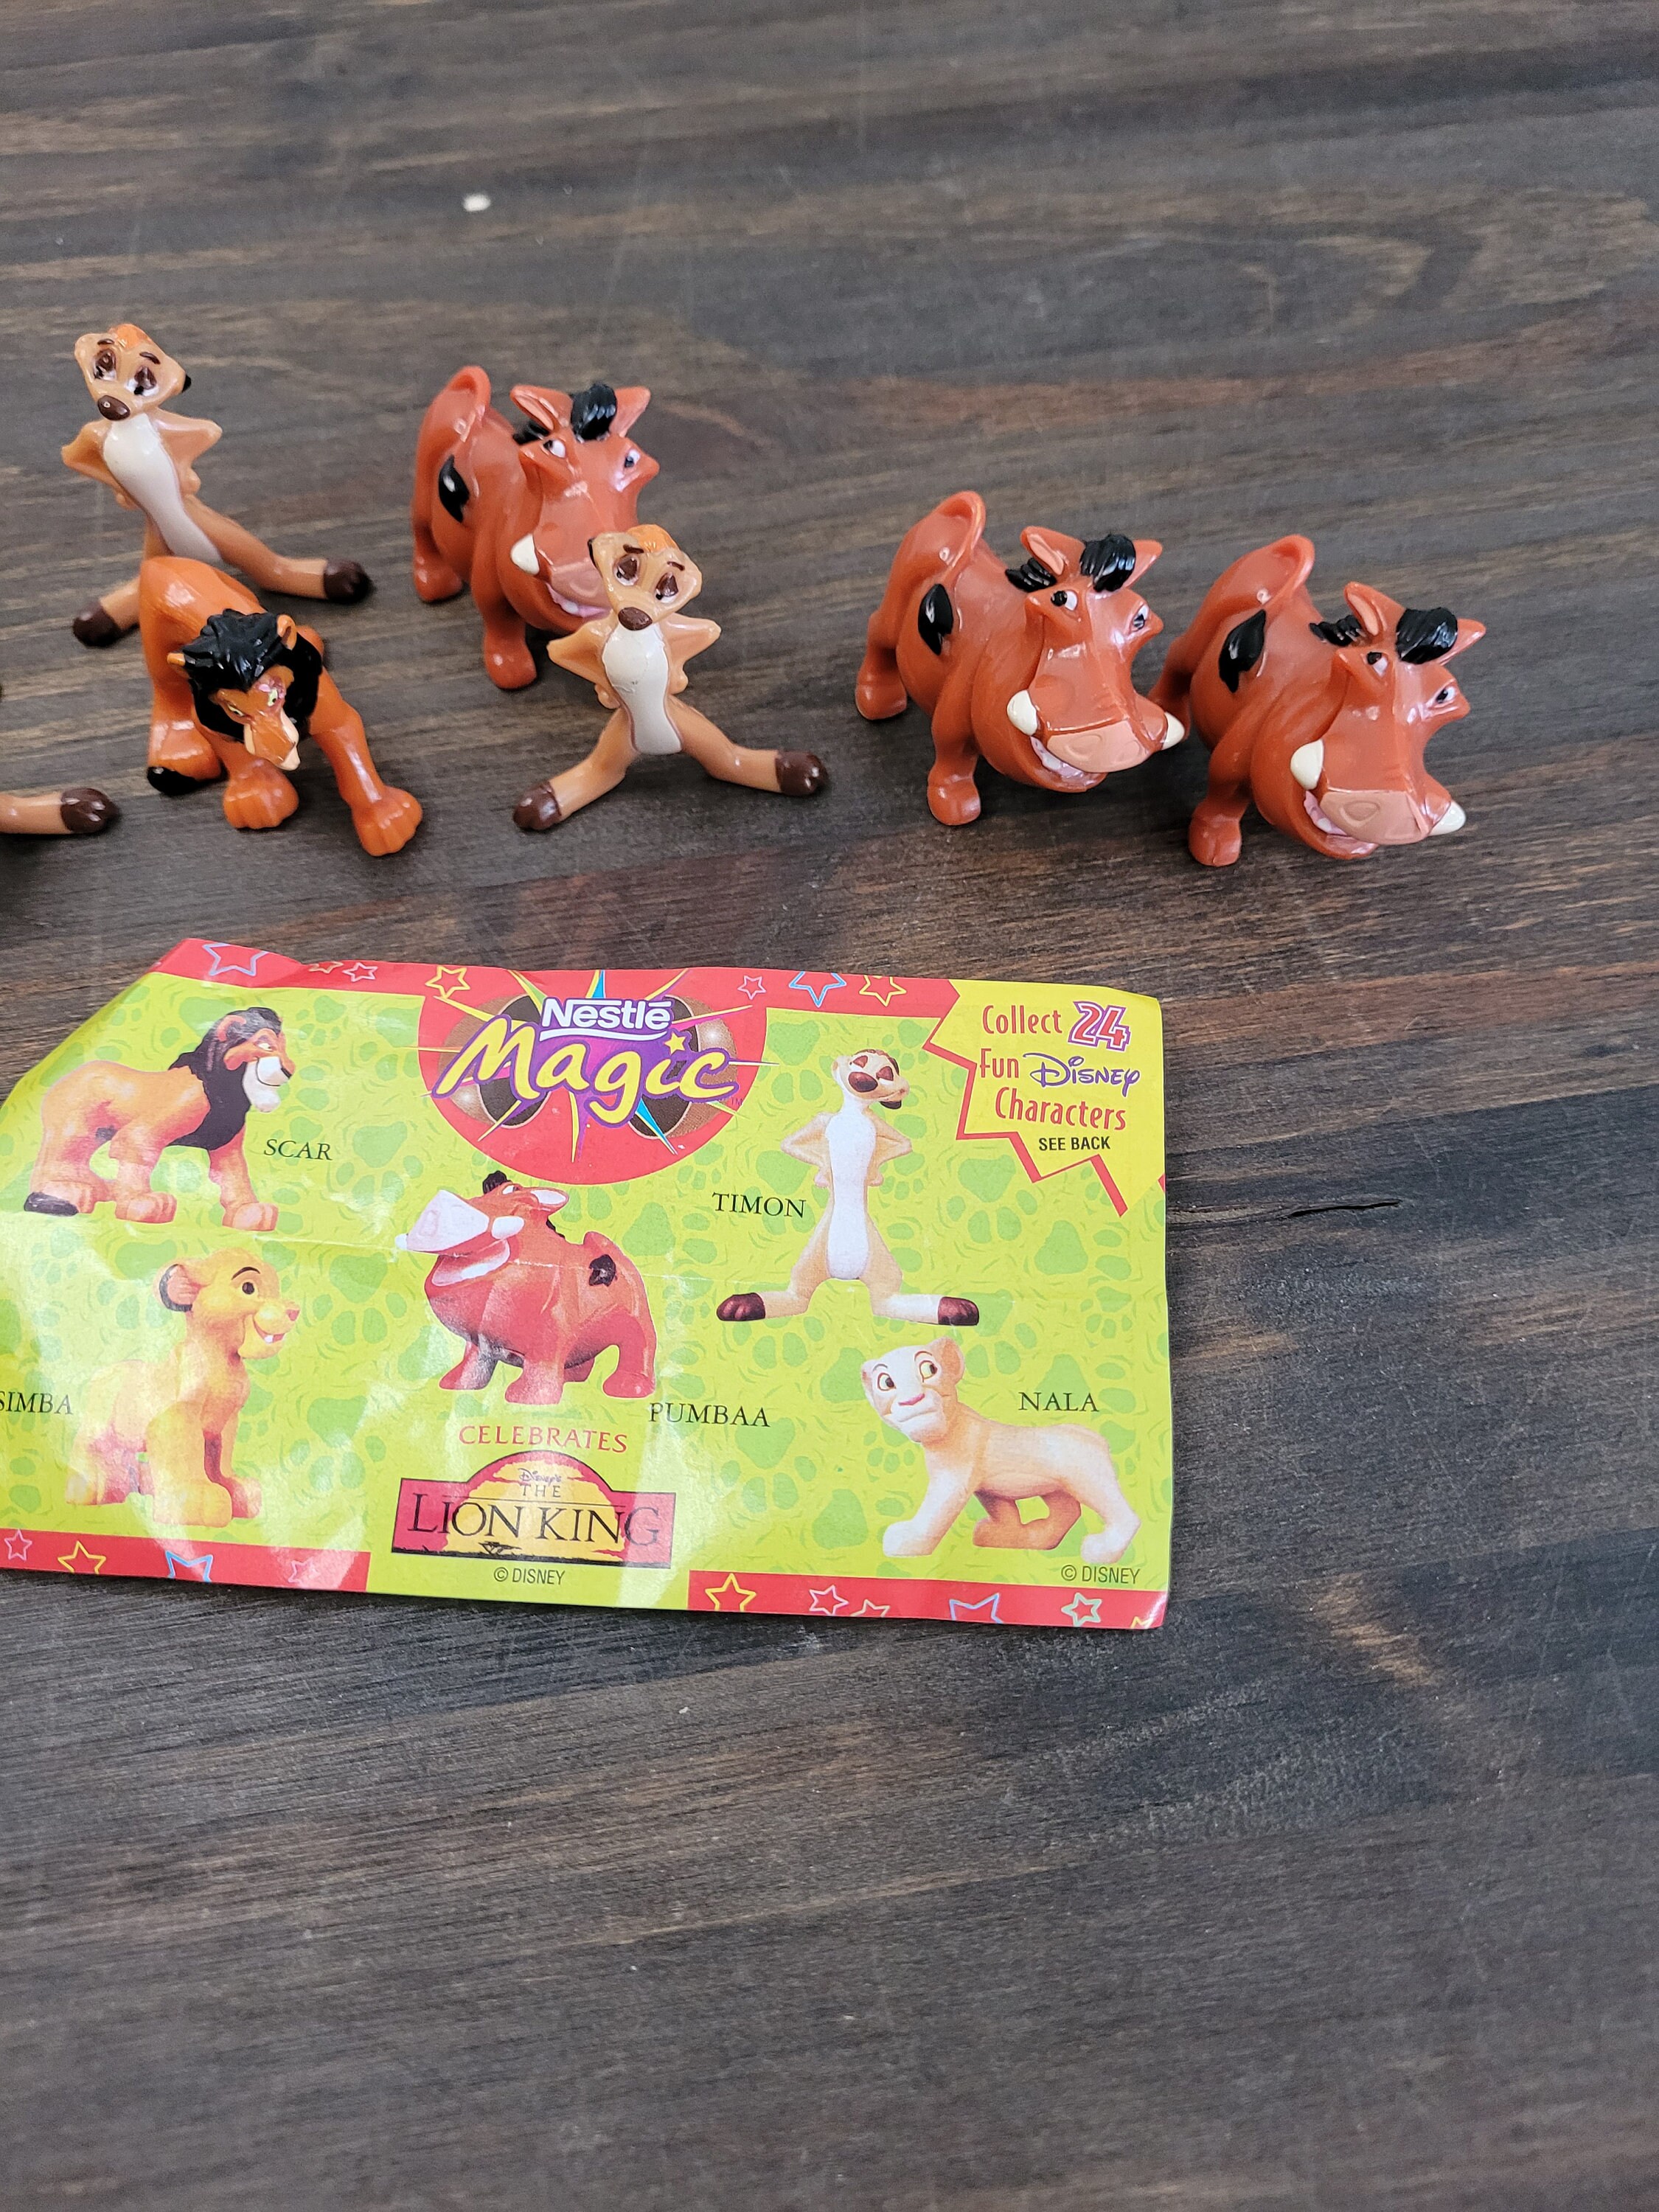 Lion King Disney Nestle Magic Mini Figures Toys Lot 7.14 | Etsy